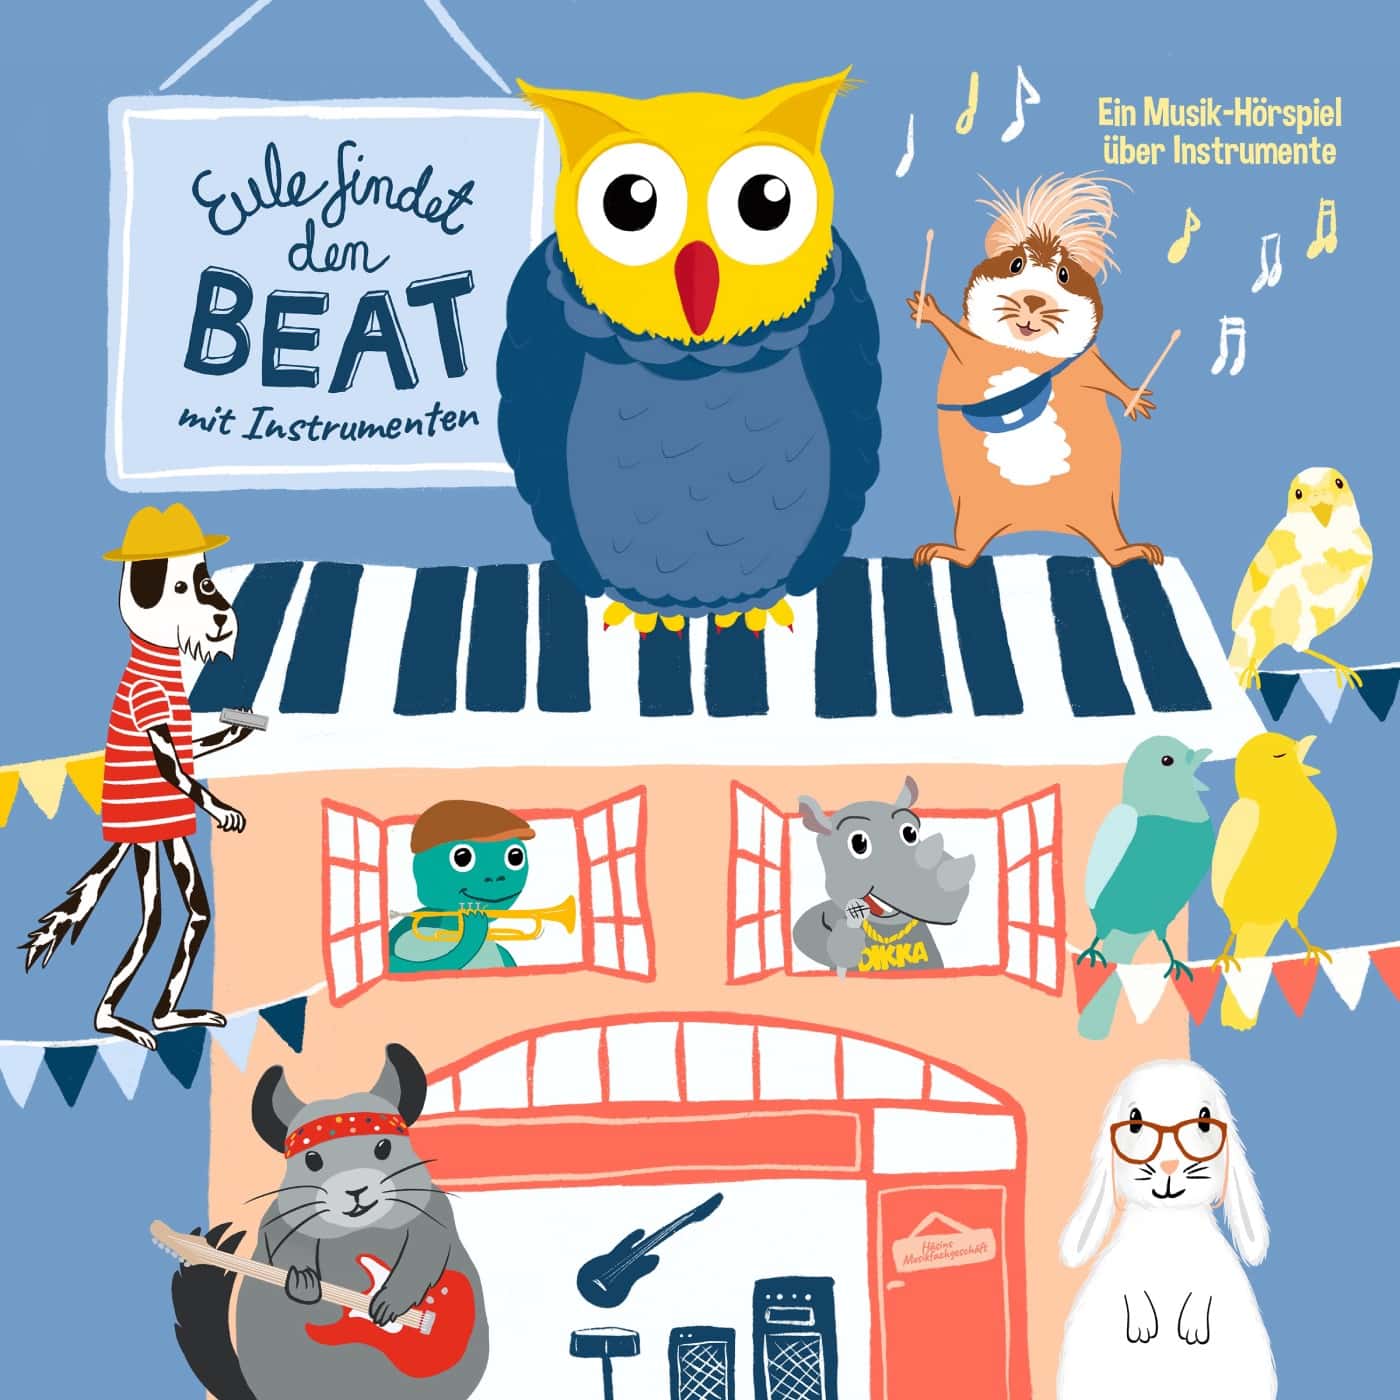 Gute Musik für Kinder: Eule findet den Beat // HIMBEER